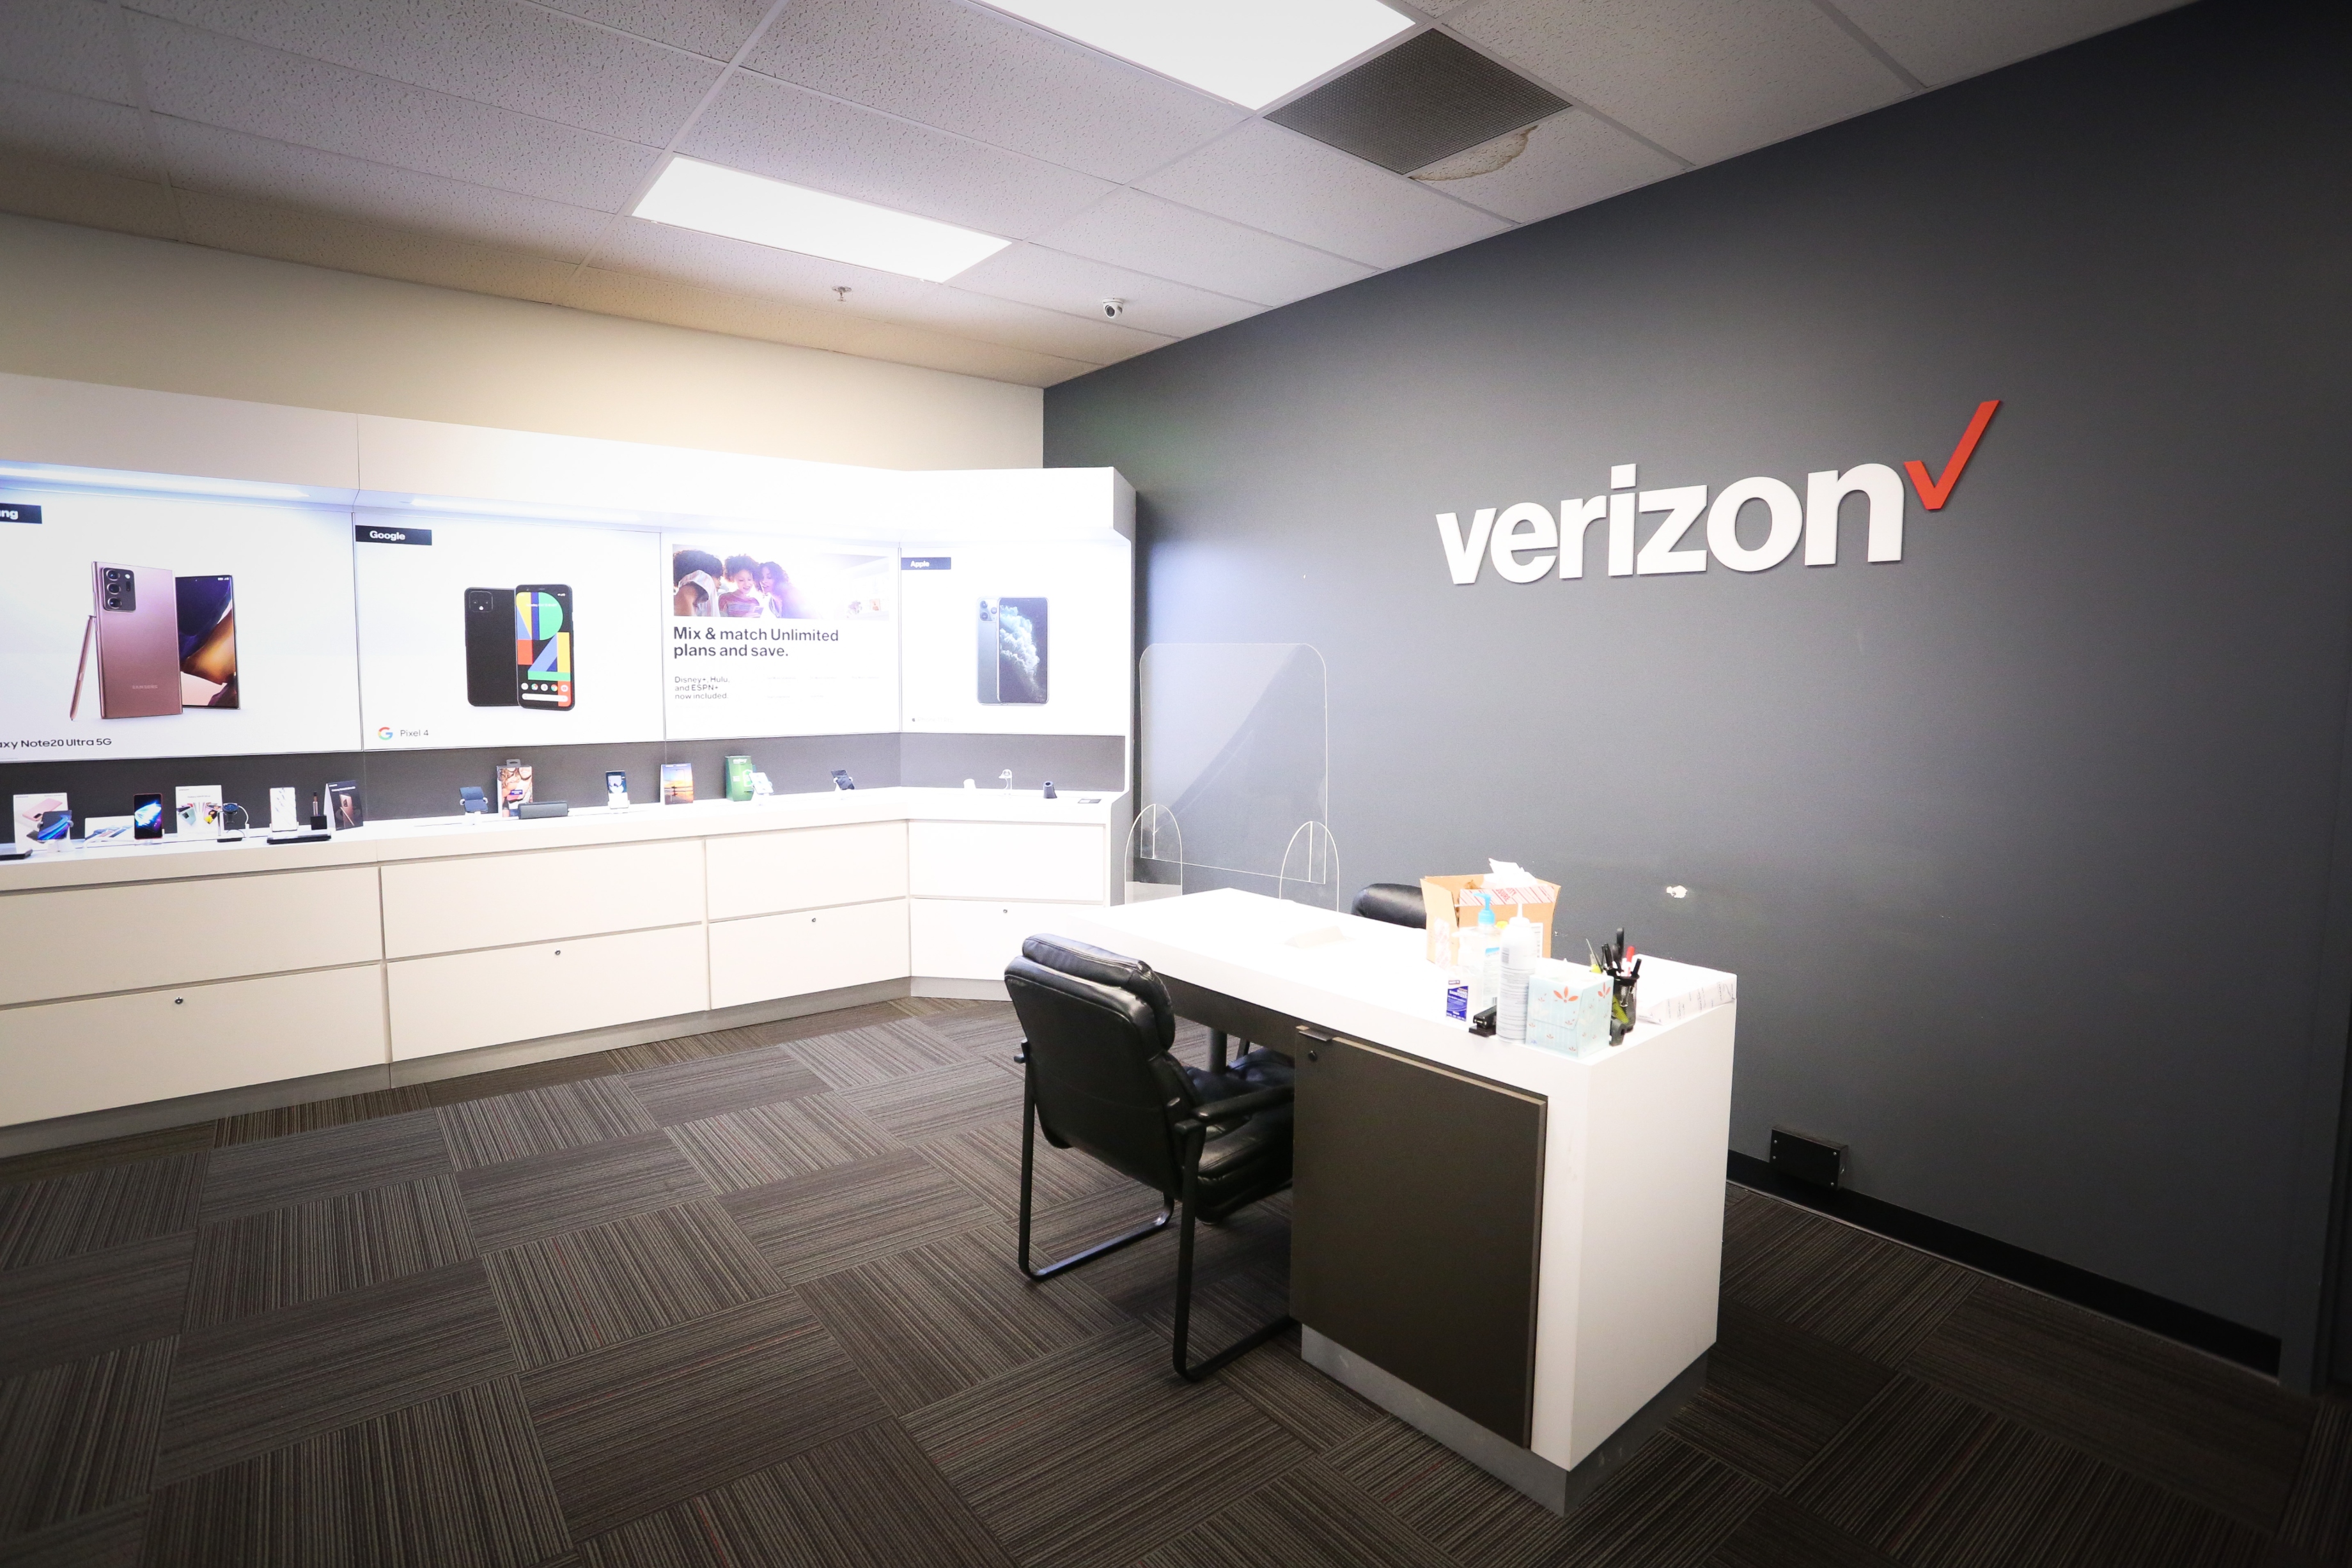 Wireless Zone® of Whitestown, Verizon Authorized Retailer
6192 Whitestown Parkway
Whitestown, IN